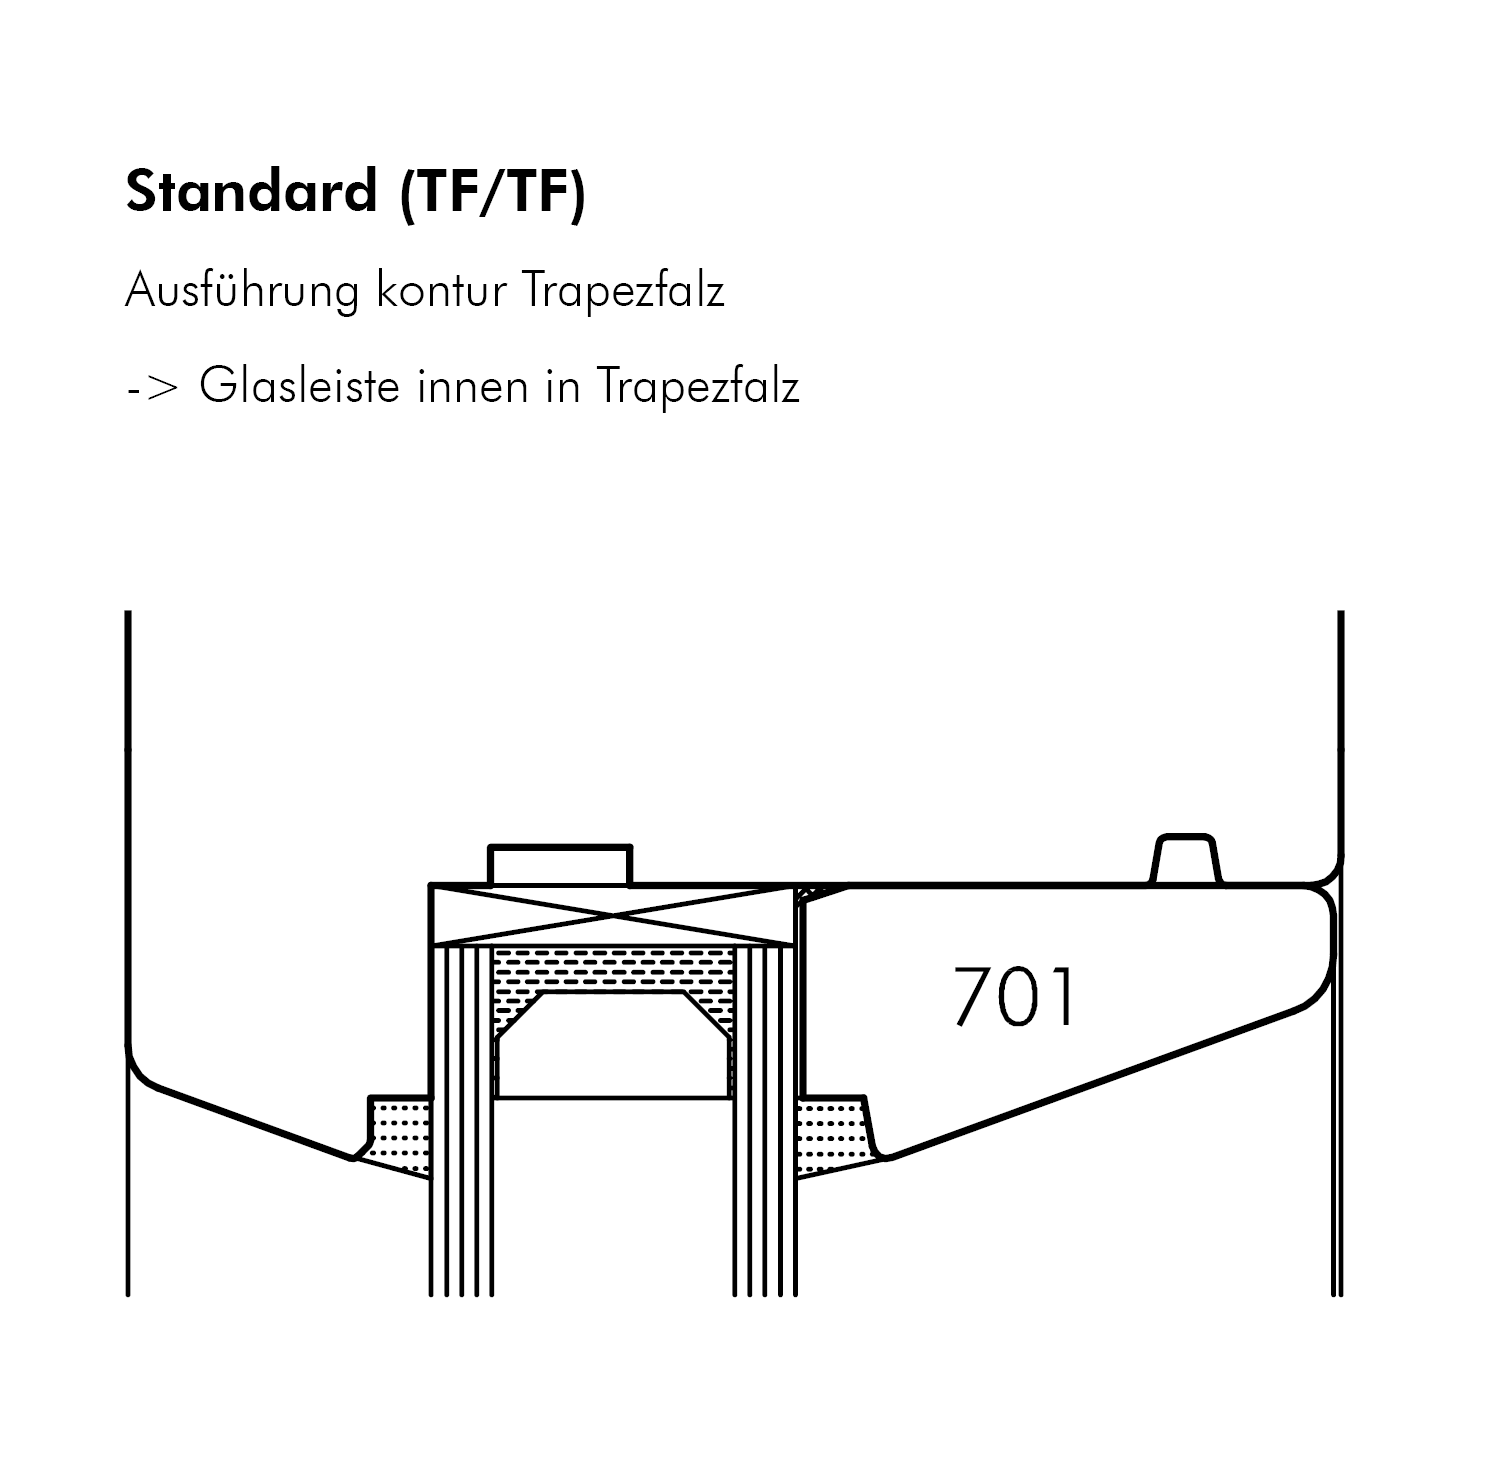 Standard (TF/TF)